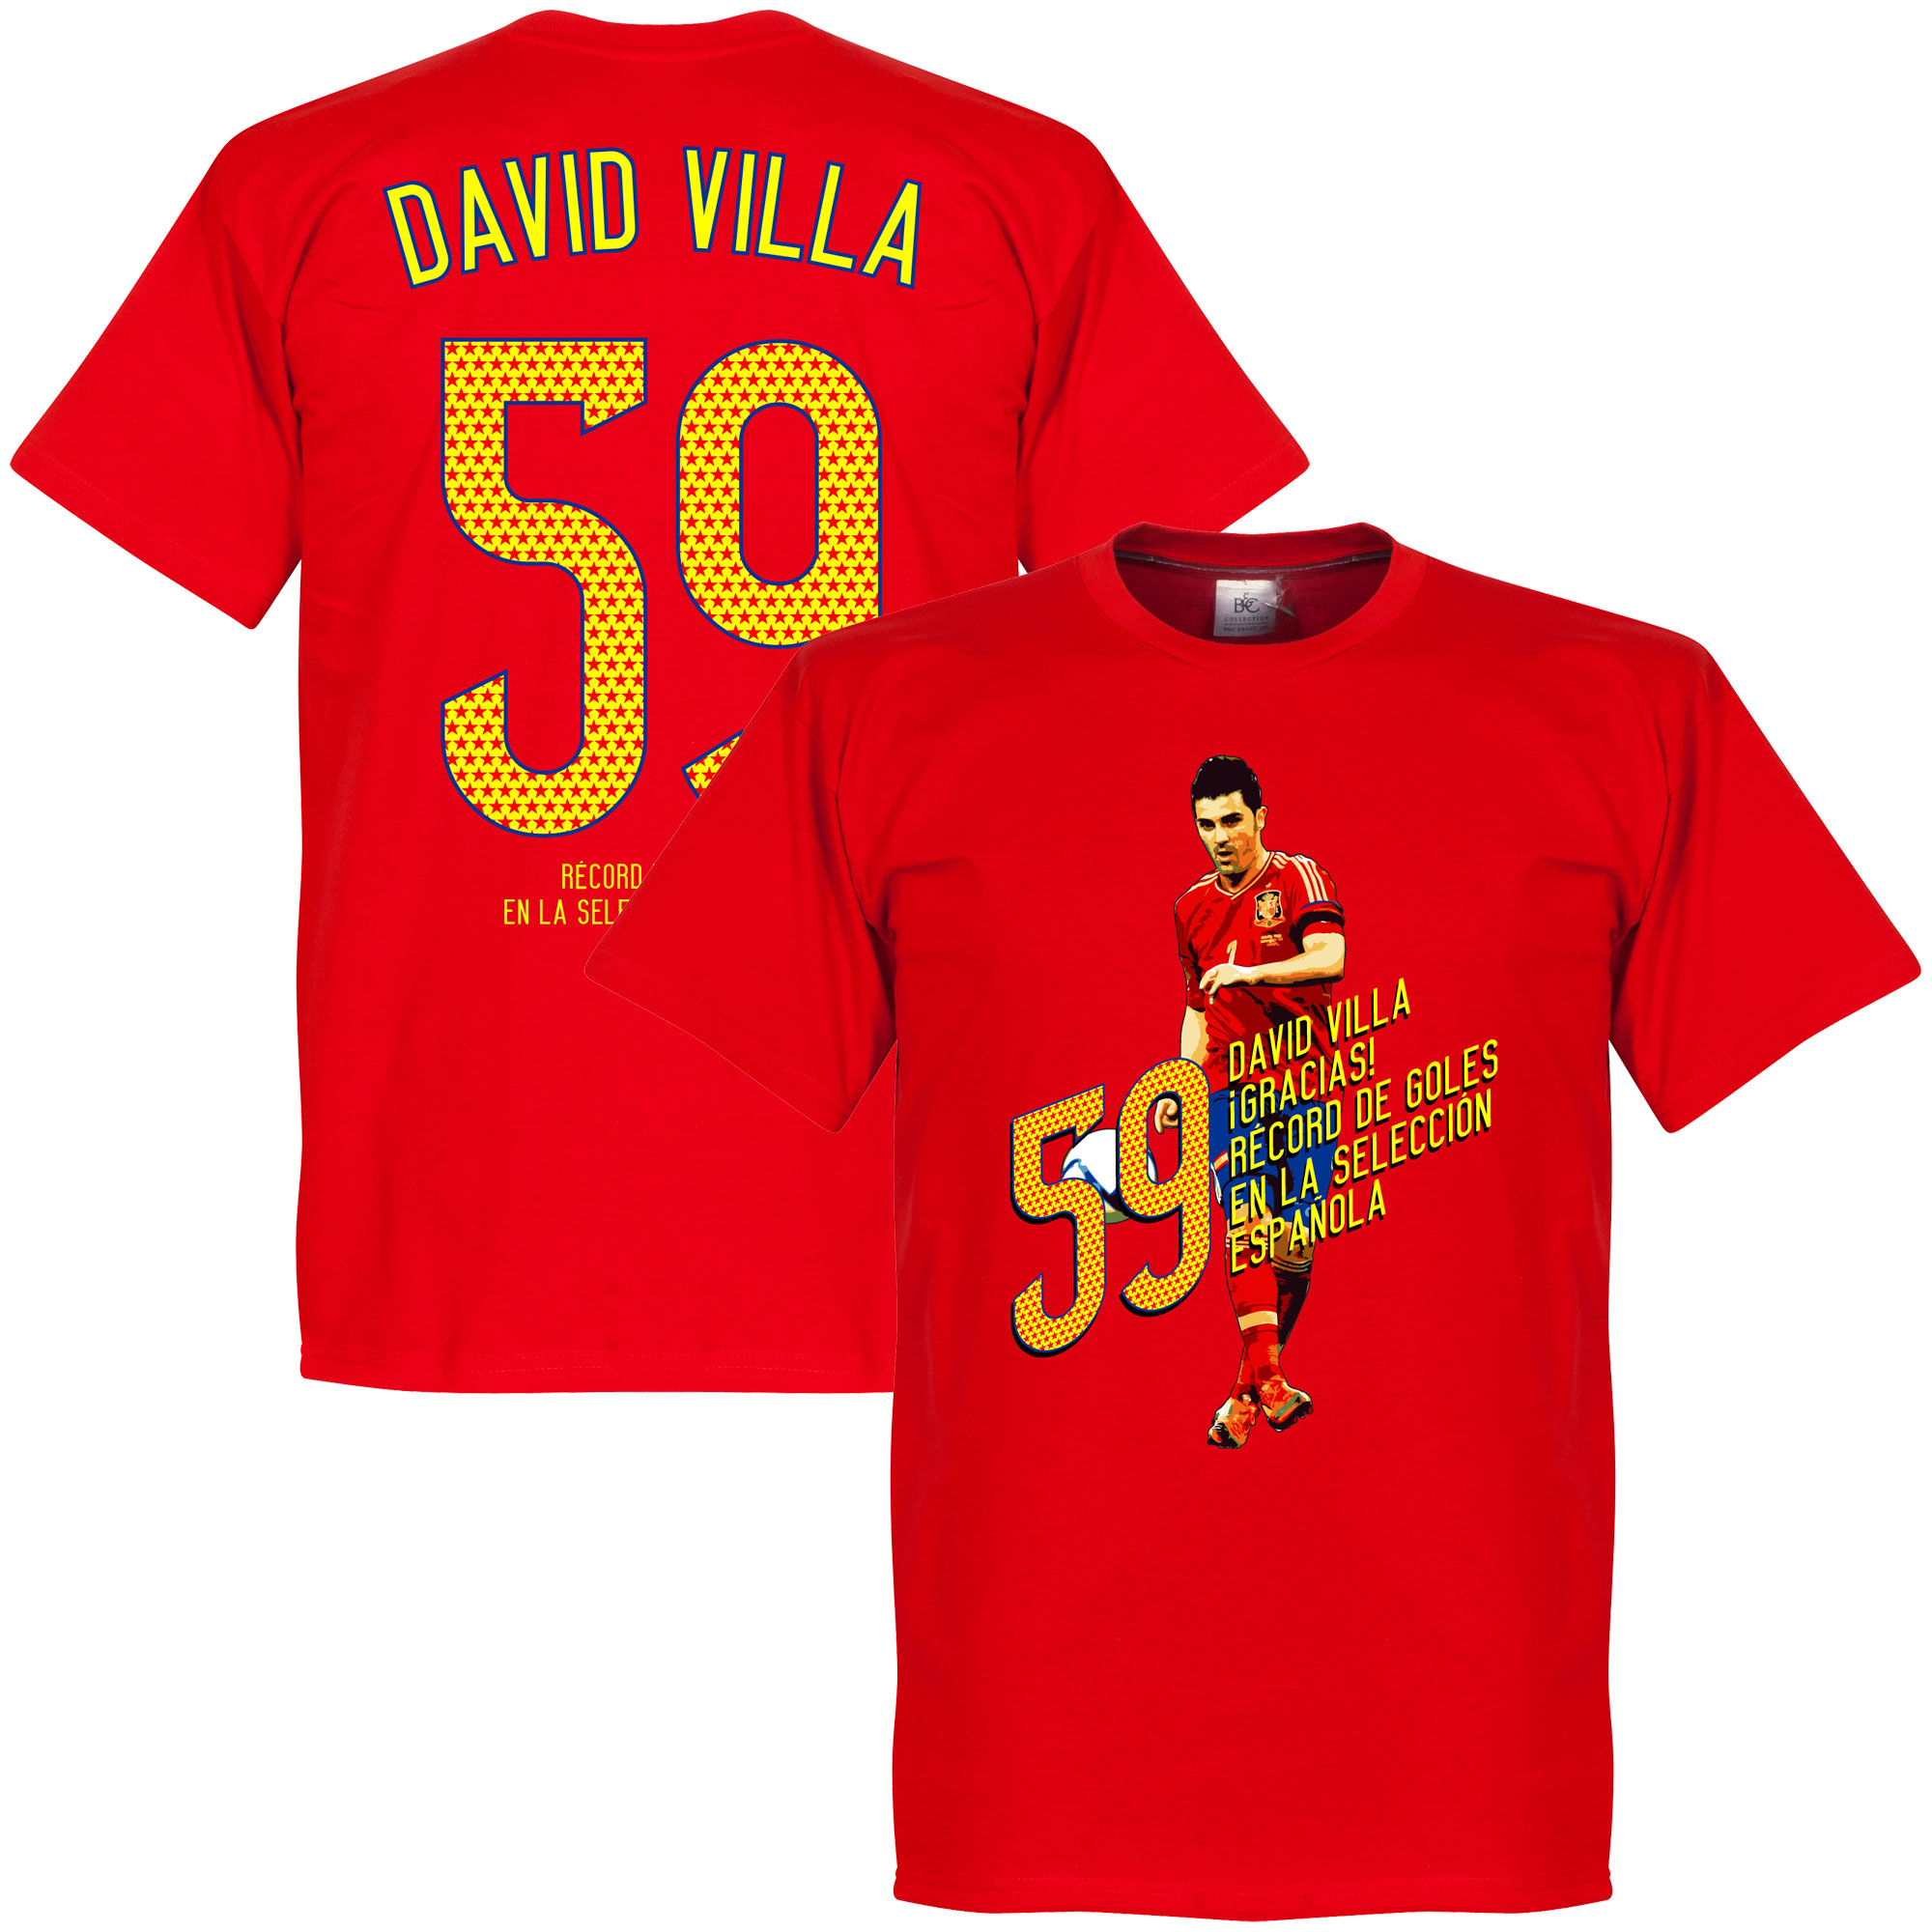 David Villa 59 Goals T-Shirt XL